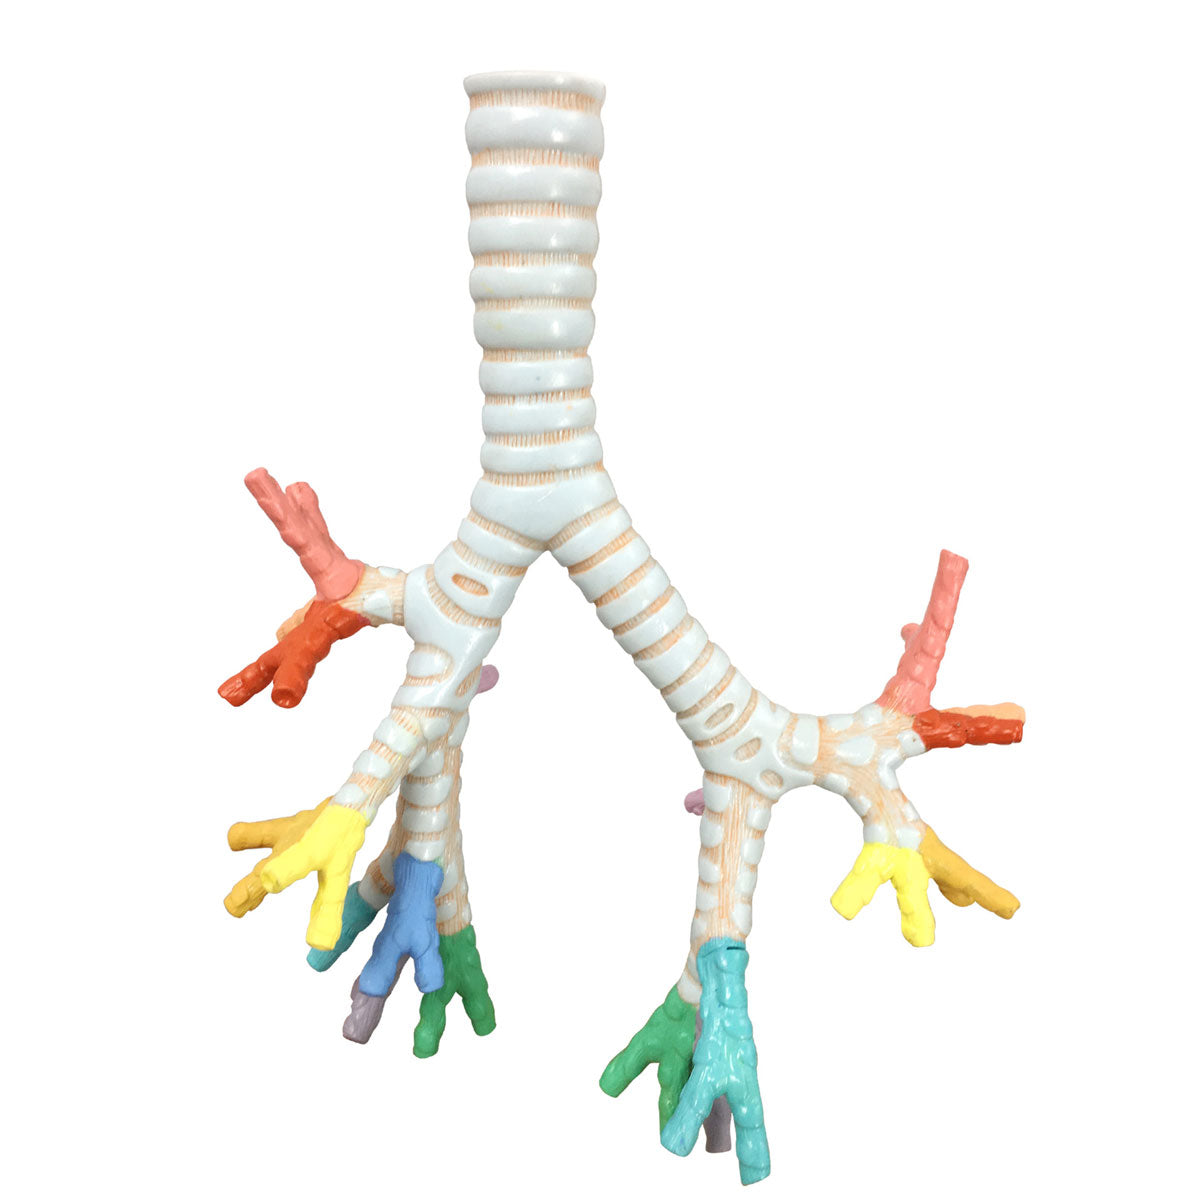 Evotech Scientific Larynx, Trachea, and Bronchi Model